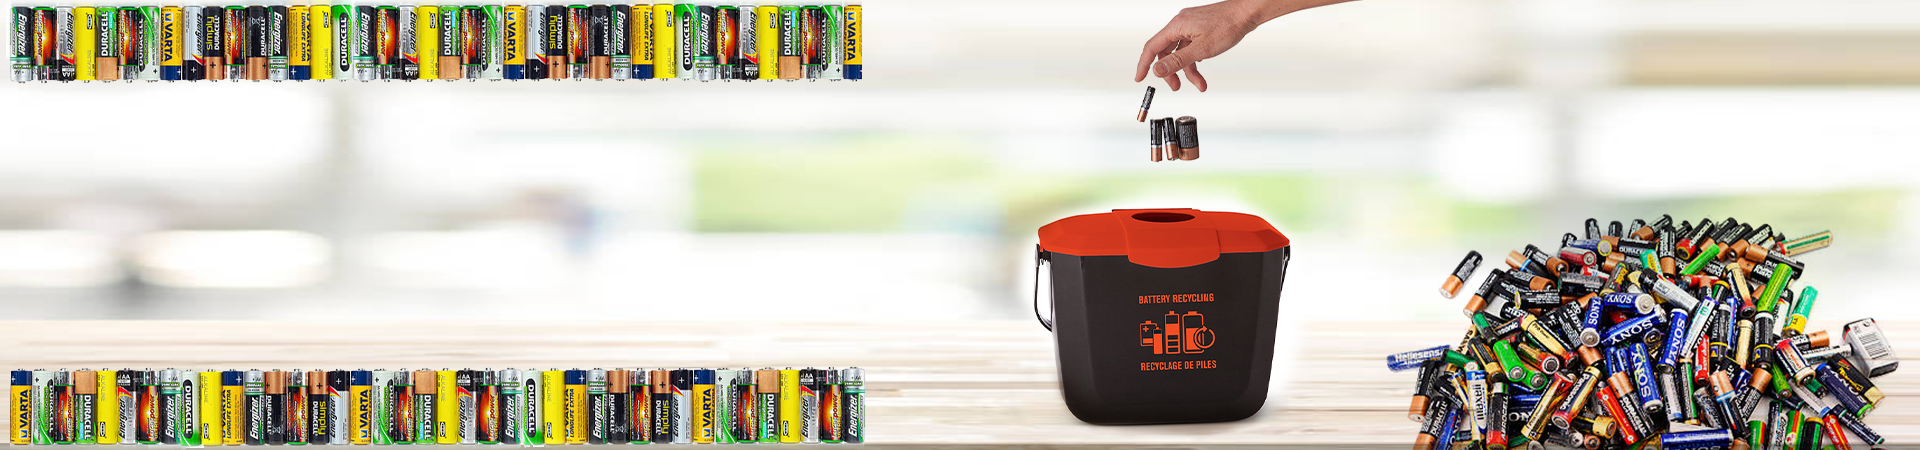 Bac de collecte de batterie de 2 gallons – Globe Commercial Products